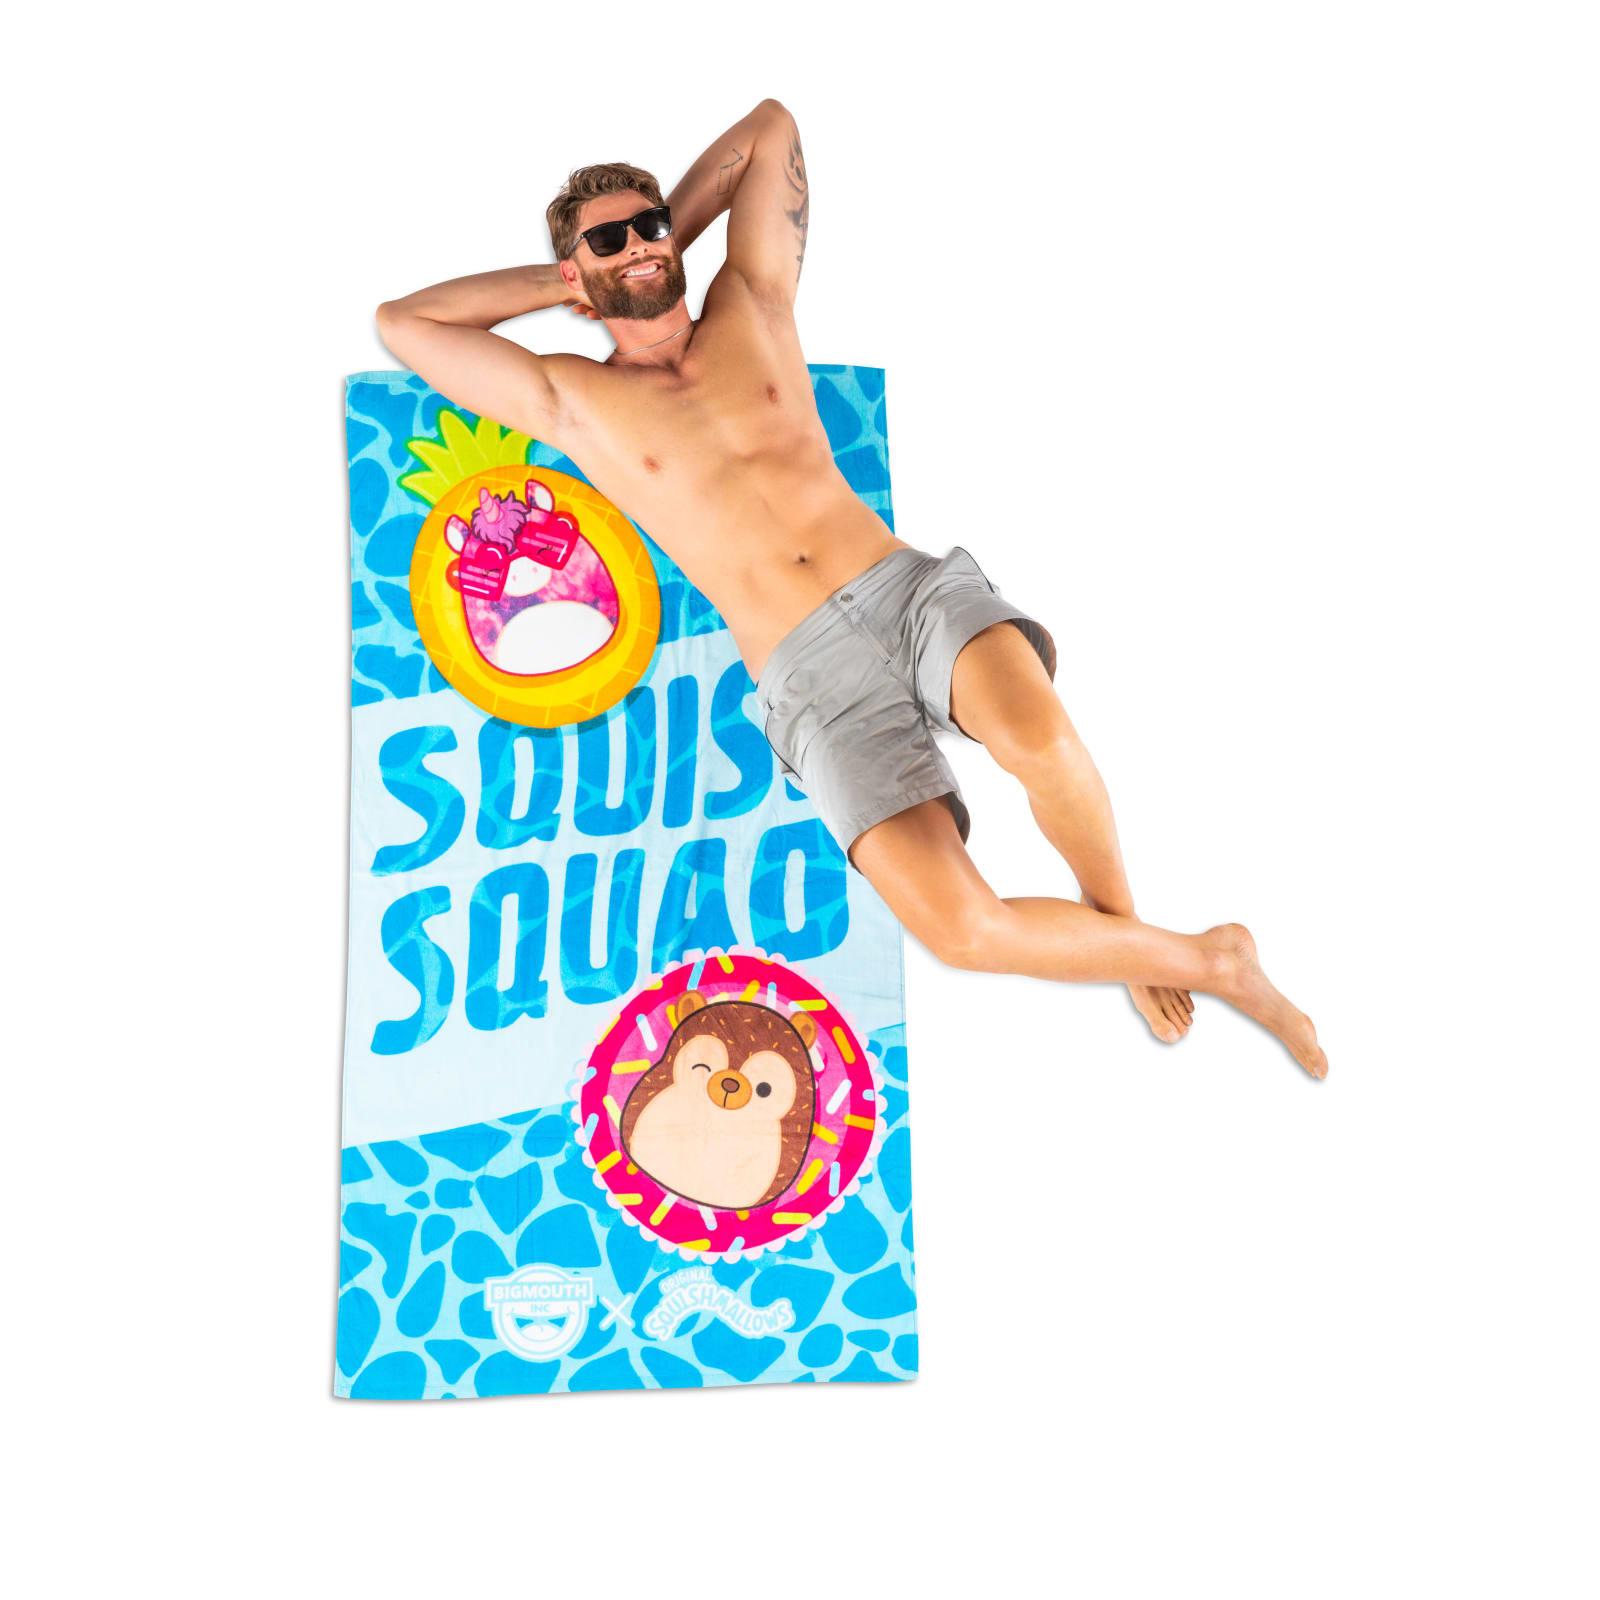 BigMouth X Squishmallows Squish Squad Beach Towel